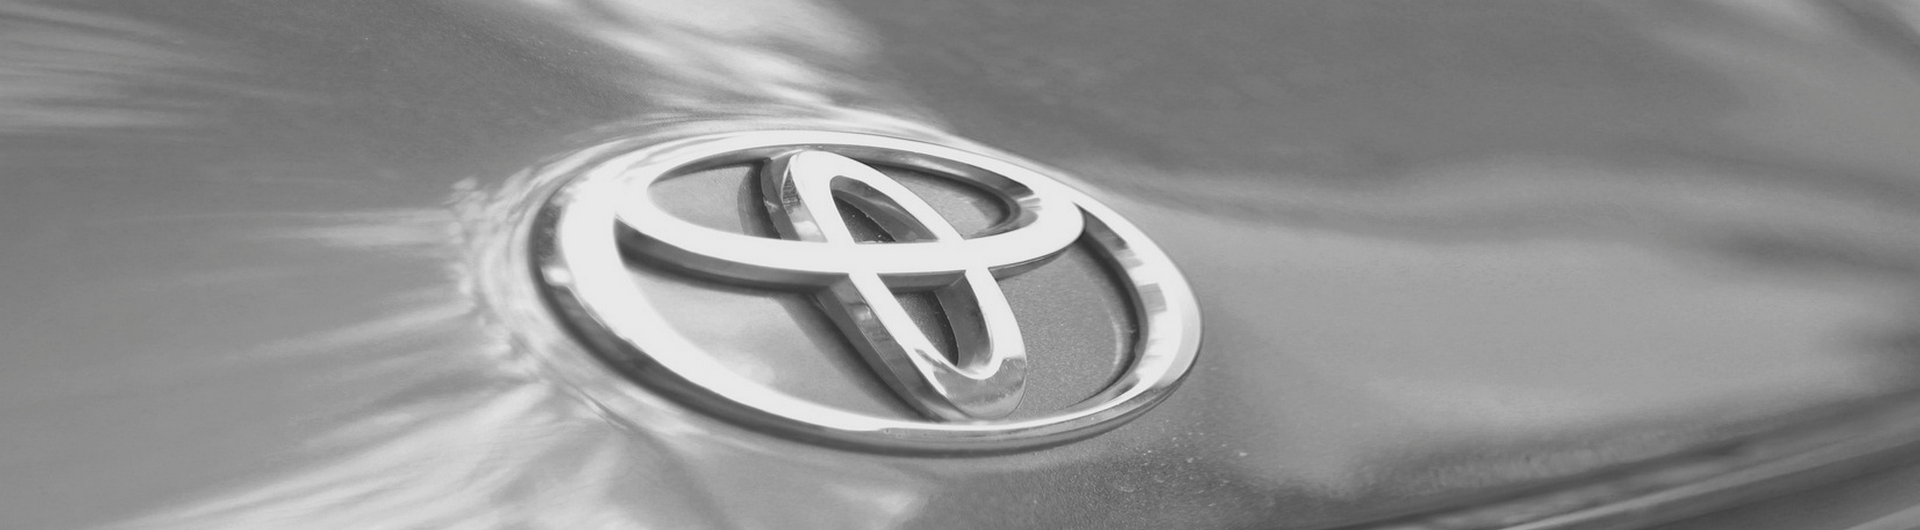 Sélectionné votre voiture parmi les modèles sportif de gamme Toyota